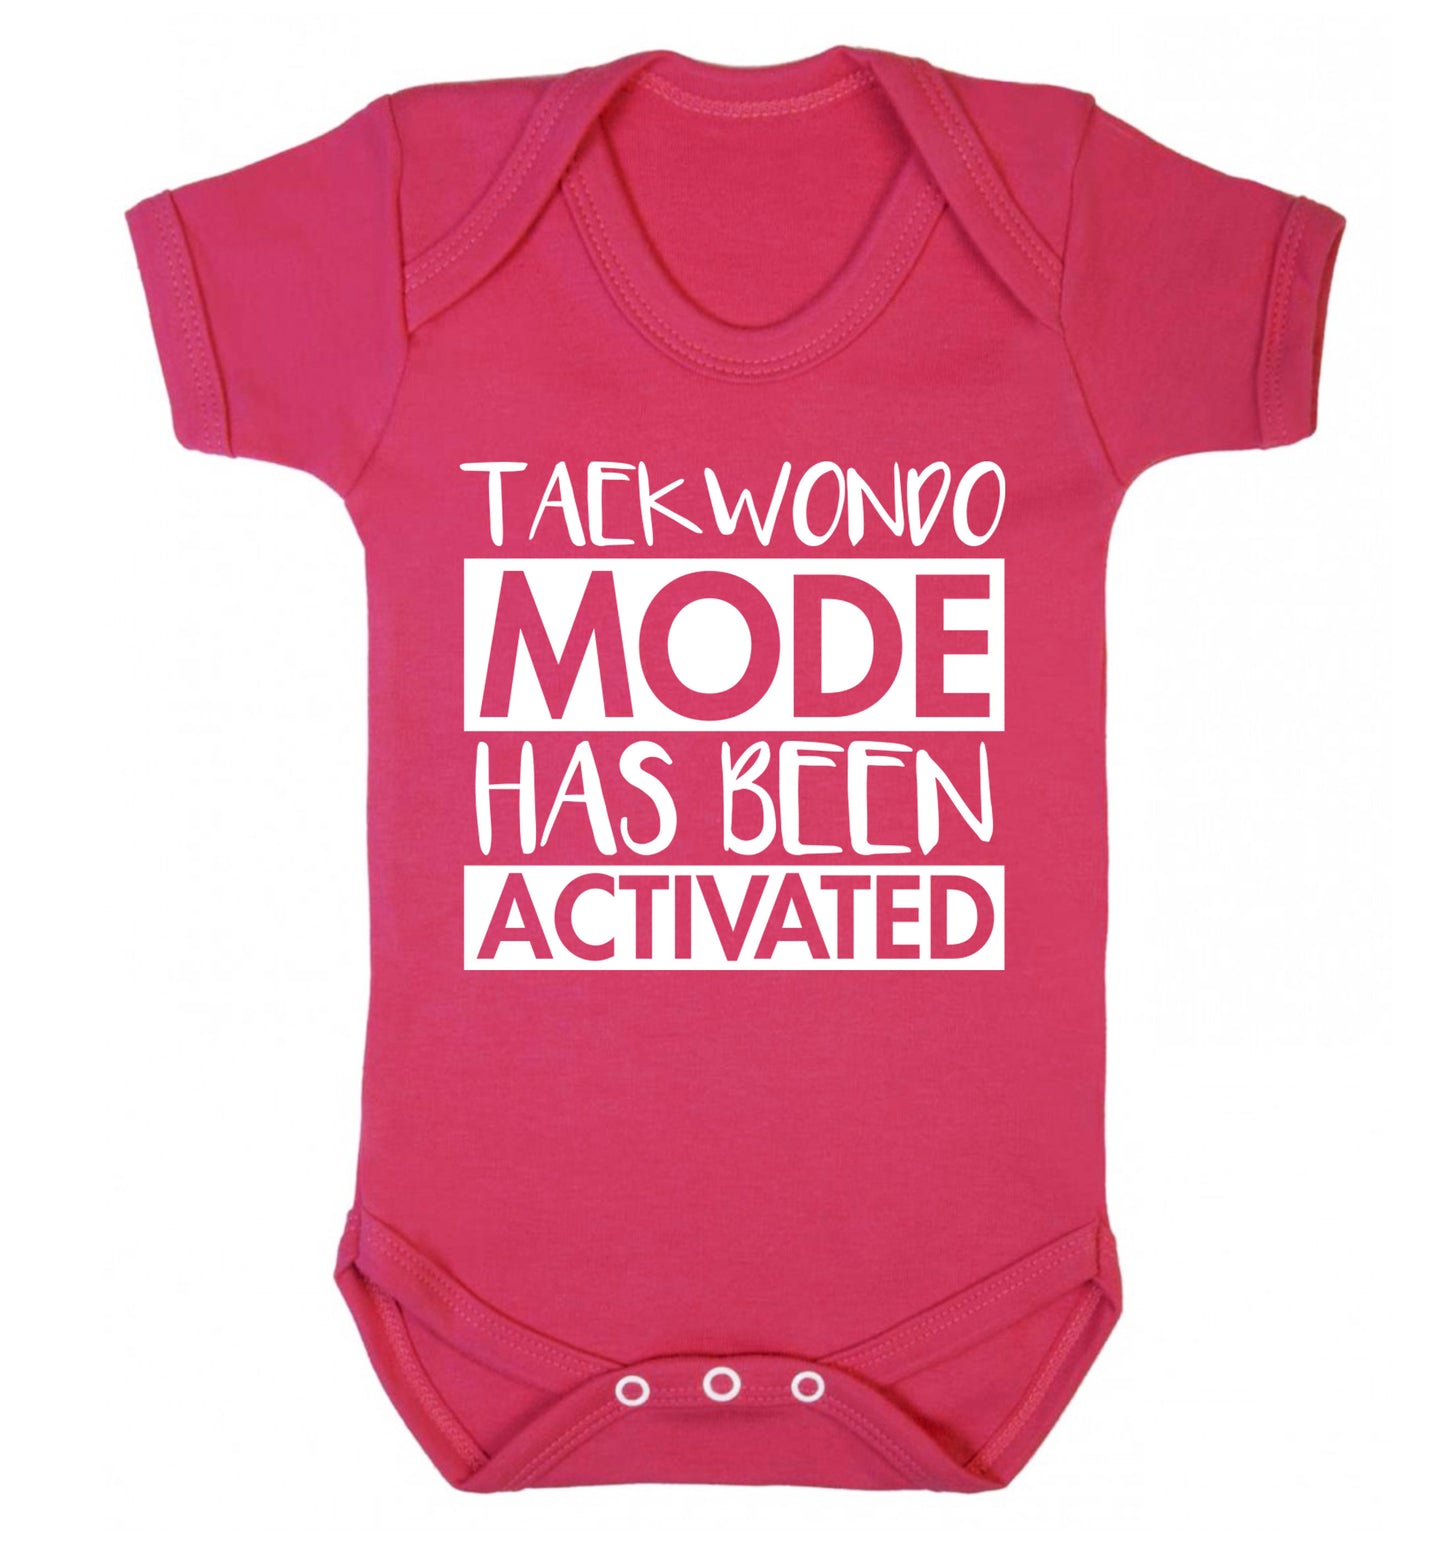 Taekwondo mode activated Baby Vest dark pink 18-24 months